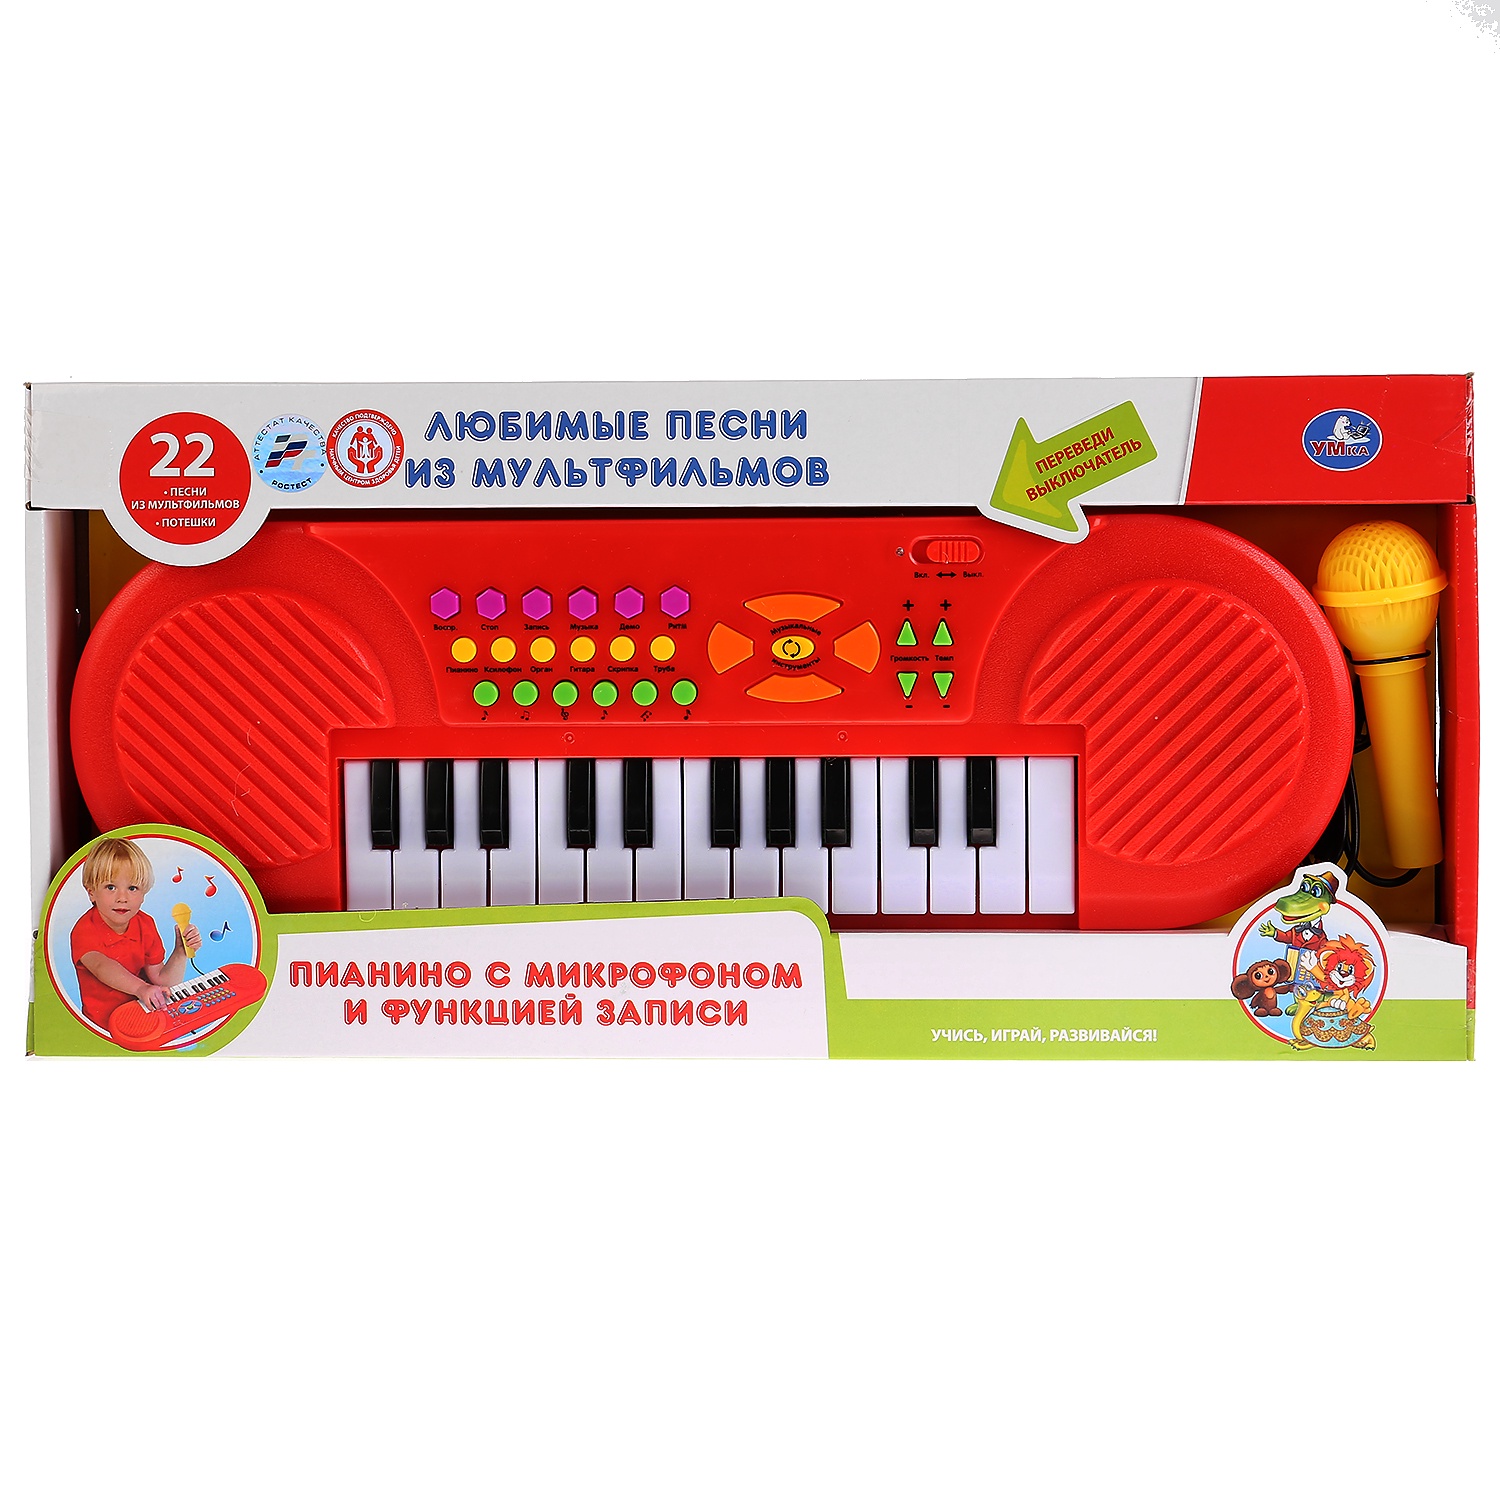 Детский музыкальный инструмент Умка B1454102-R красный